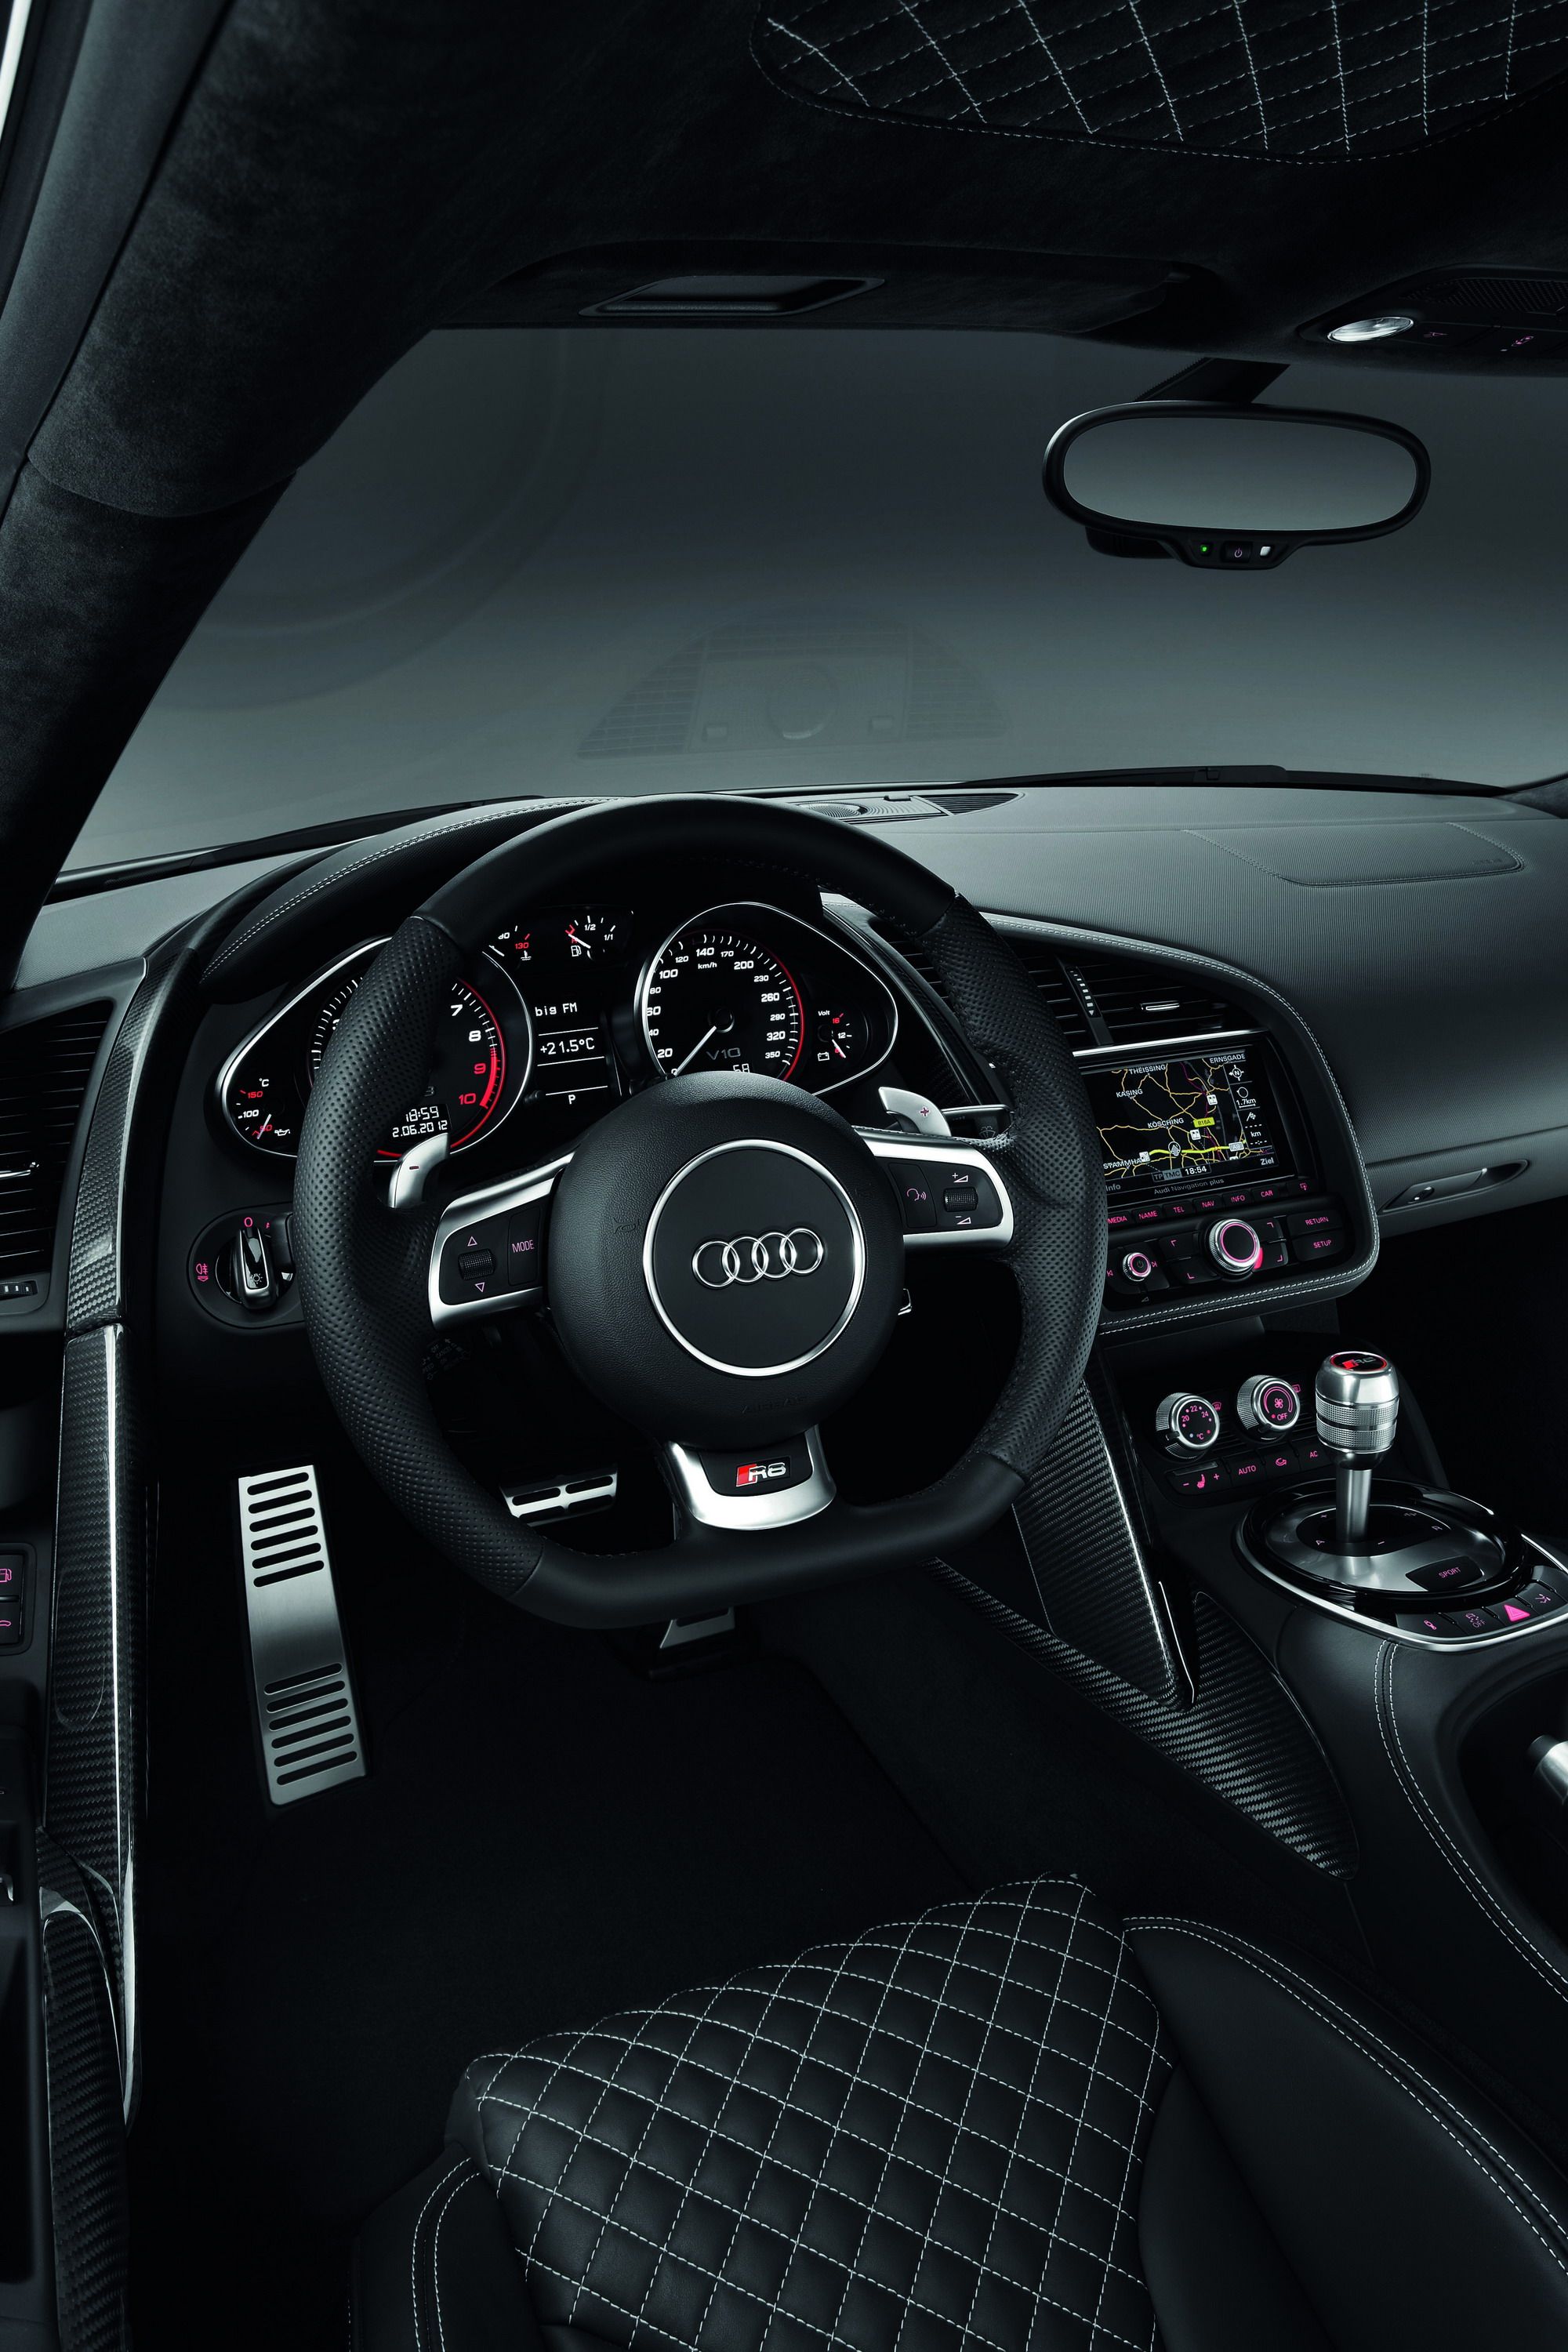 2014 - 2015 Audi R8 V10